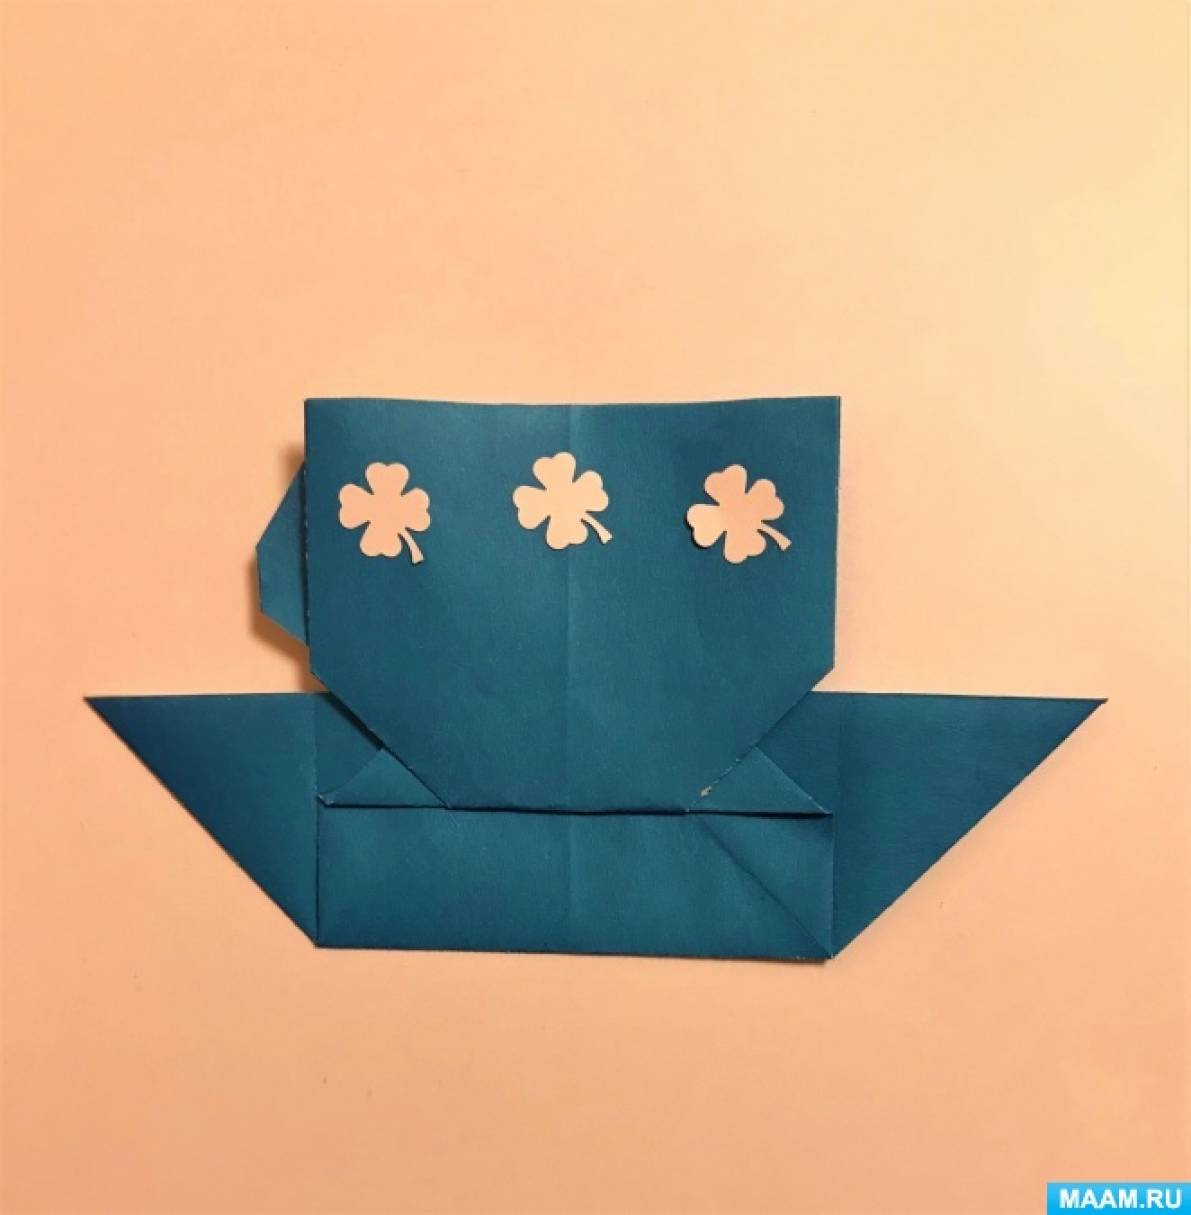 Мастер-класс по оригами из цветной бумаги «Чашка с блюдцем» для старших дошкольников